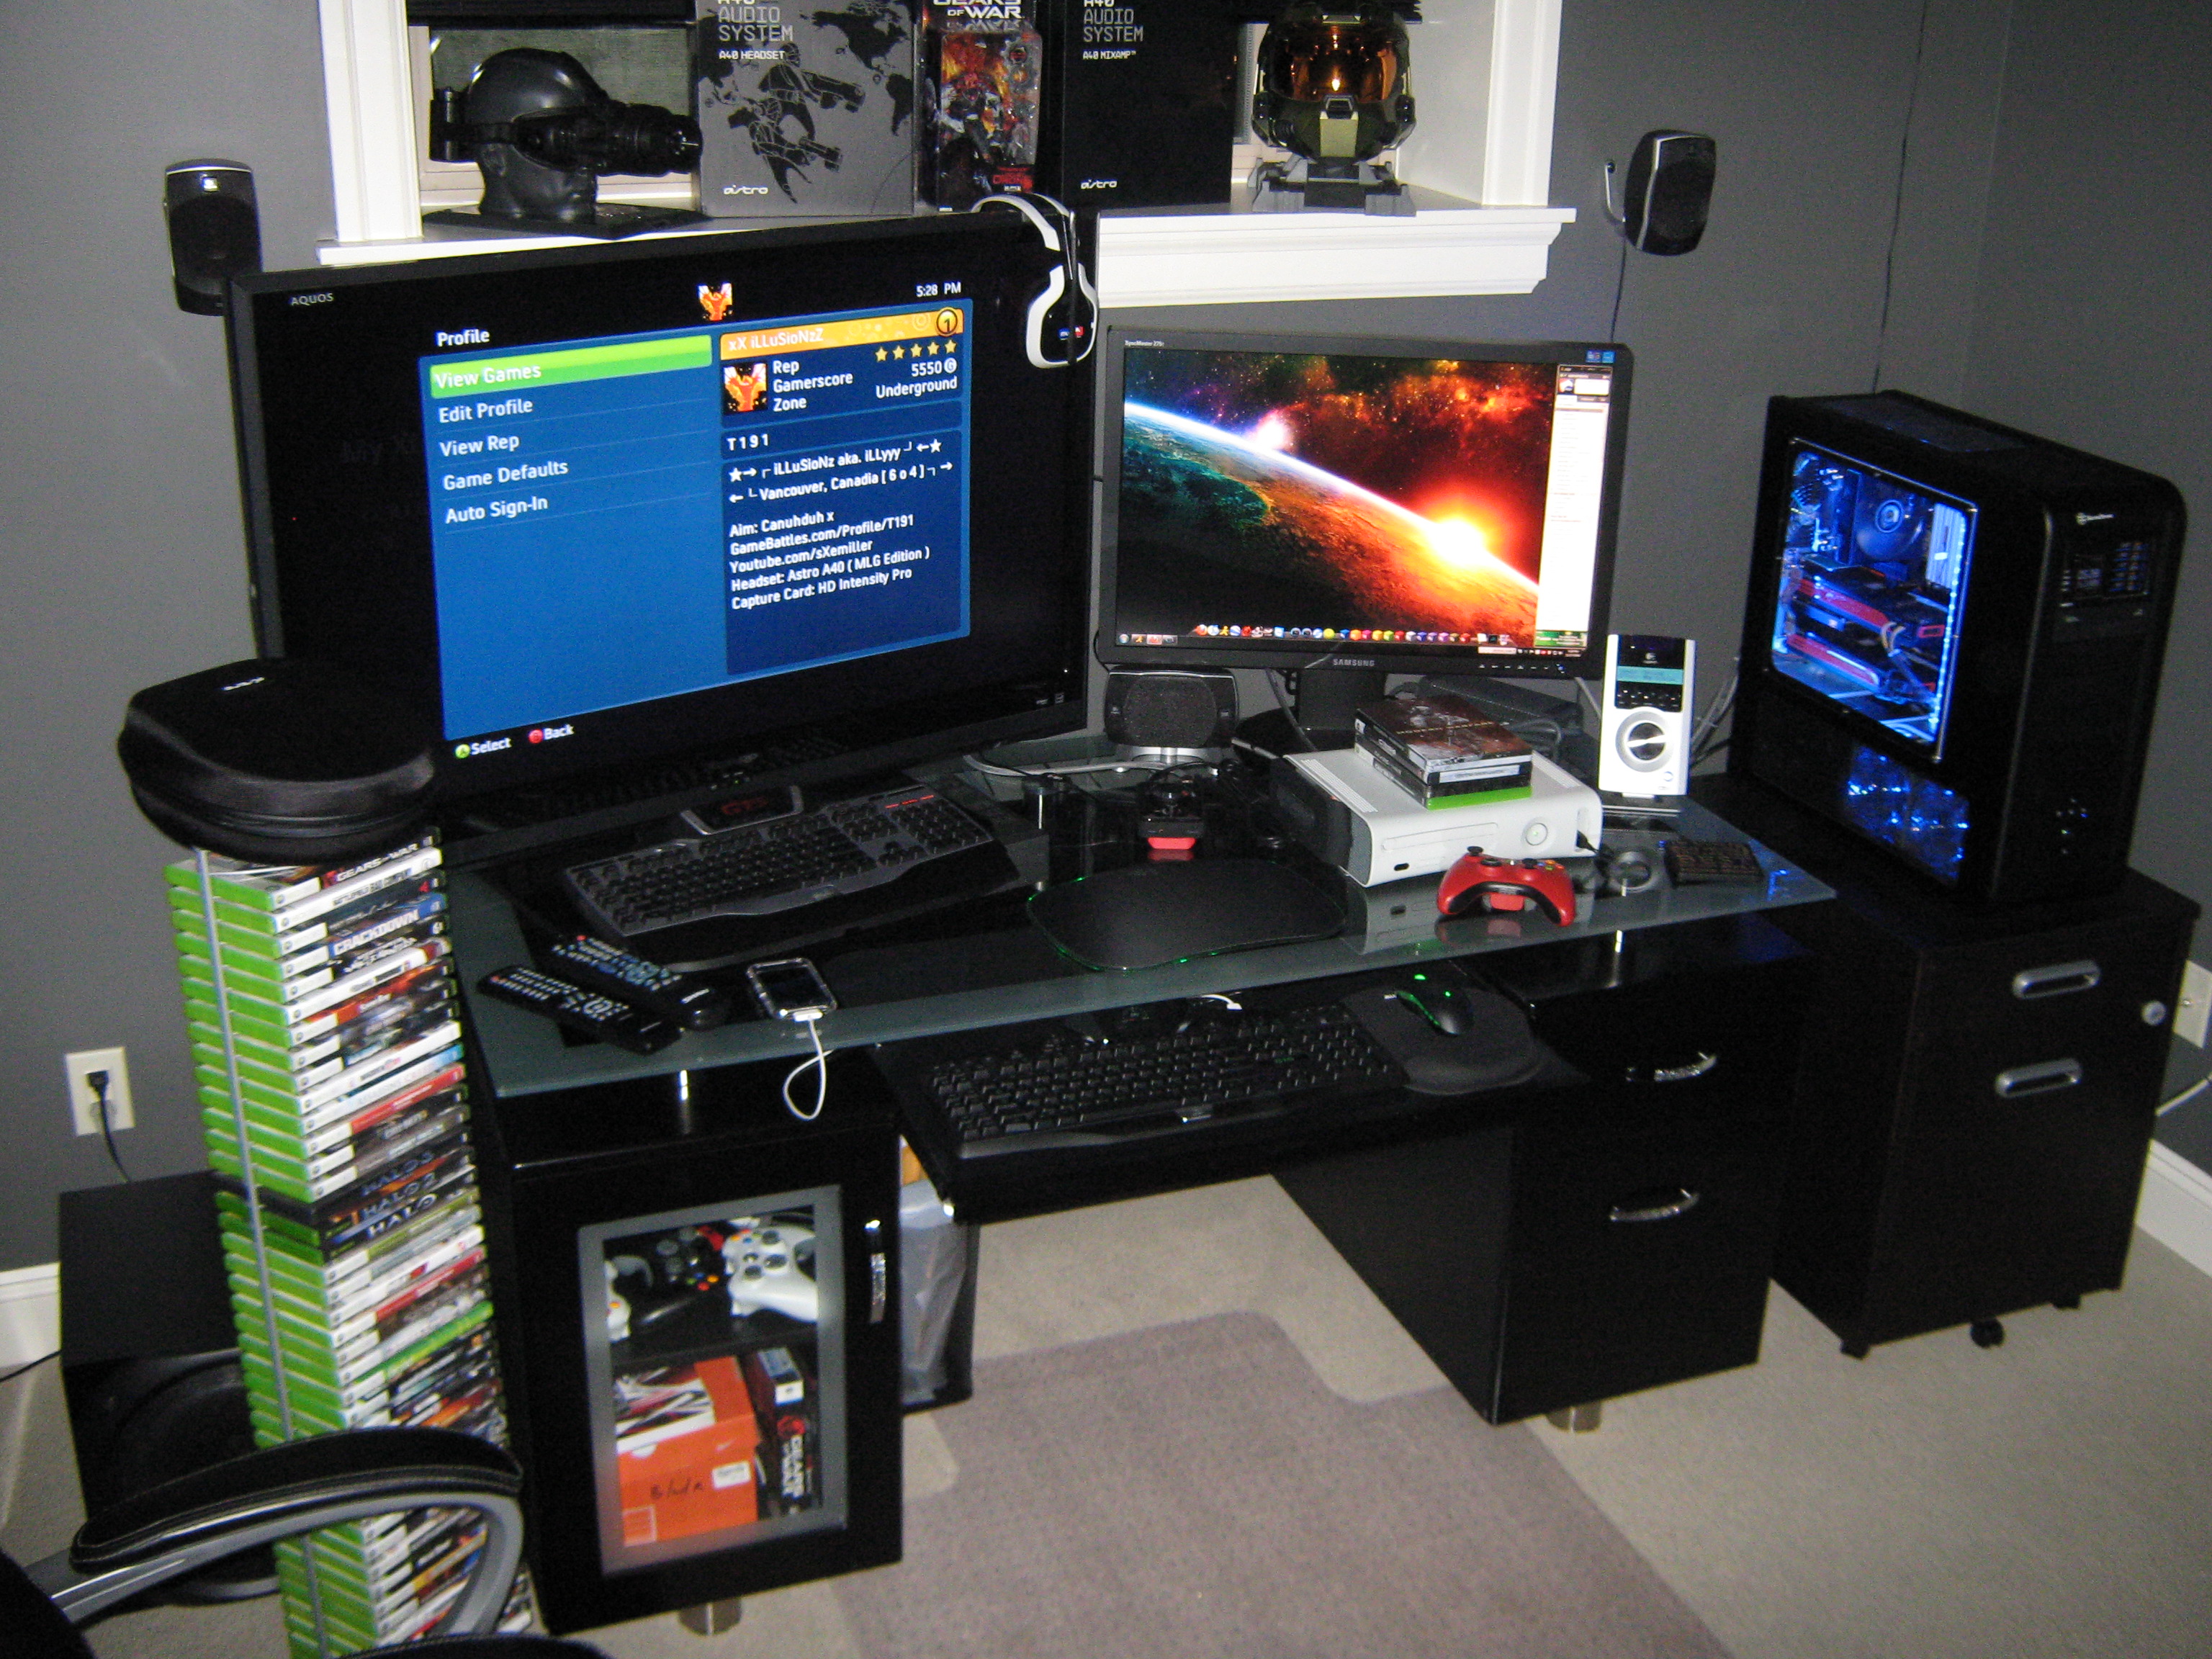 Gaming Setup